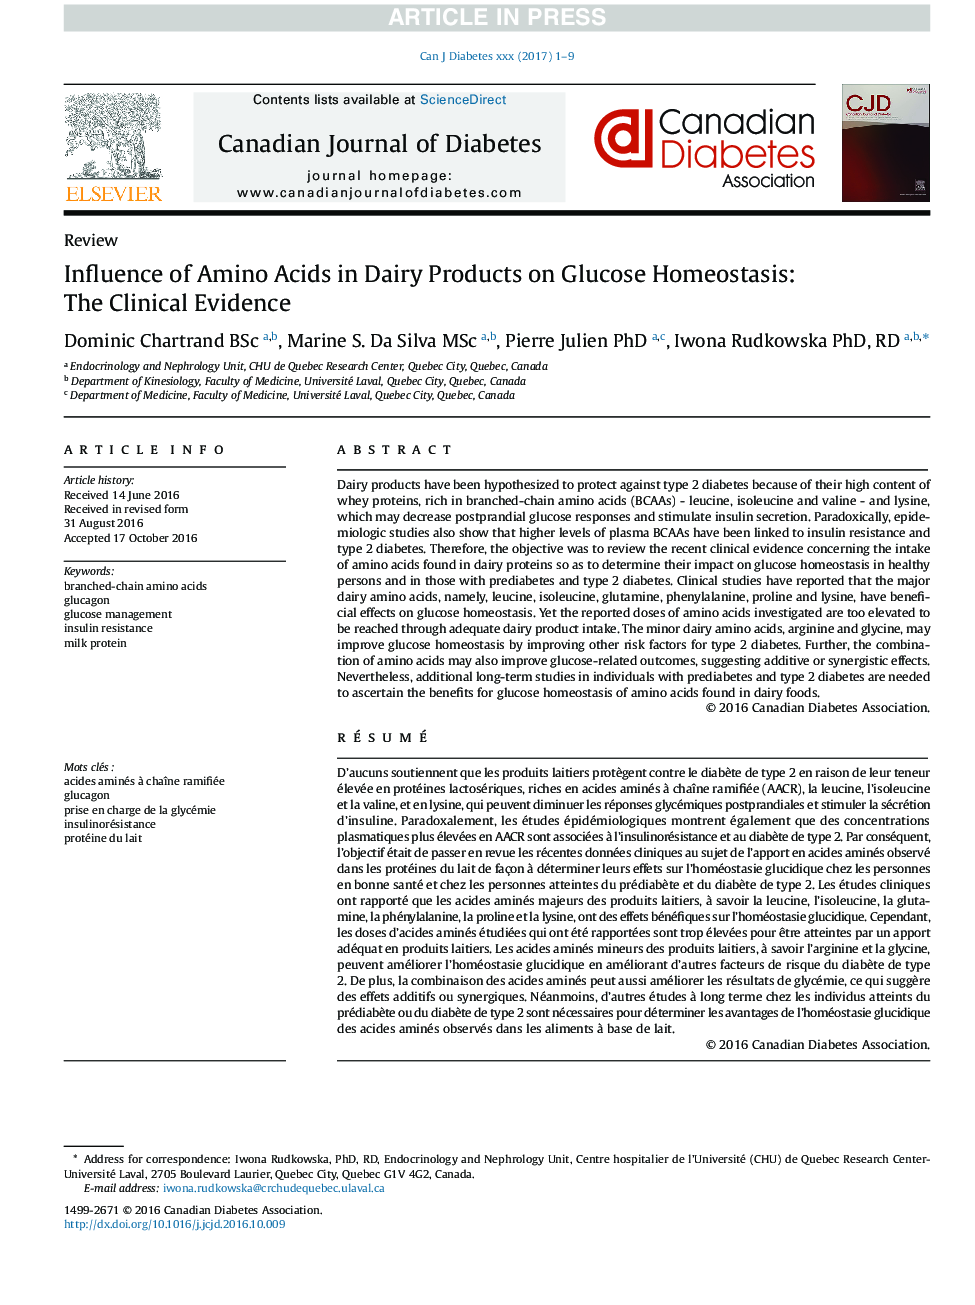 تأثیر اسید آمینه در محصولات لبنی بر روی هوموساتوز گلوکز: شواهد بالینی 